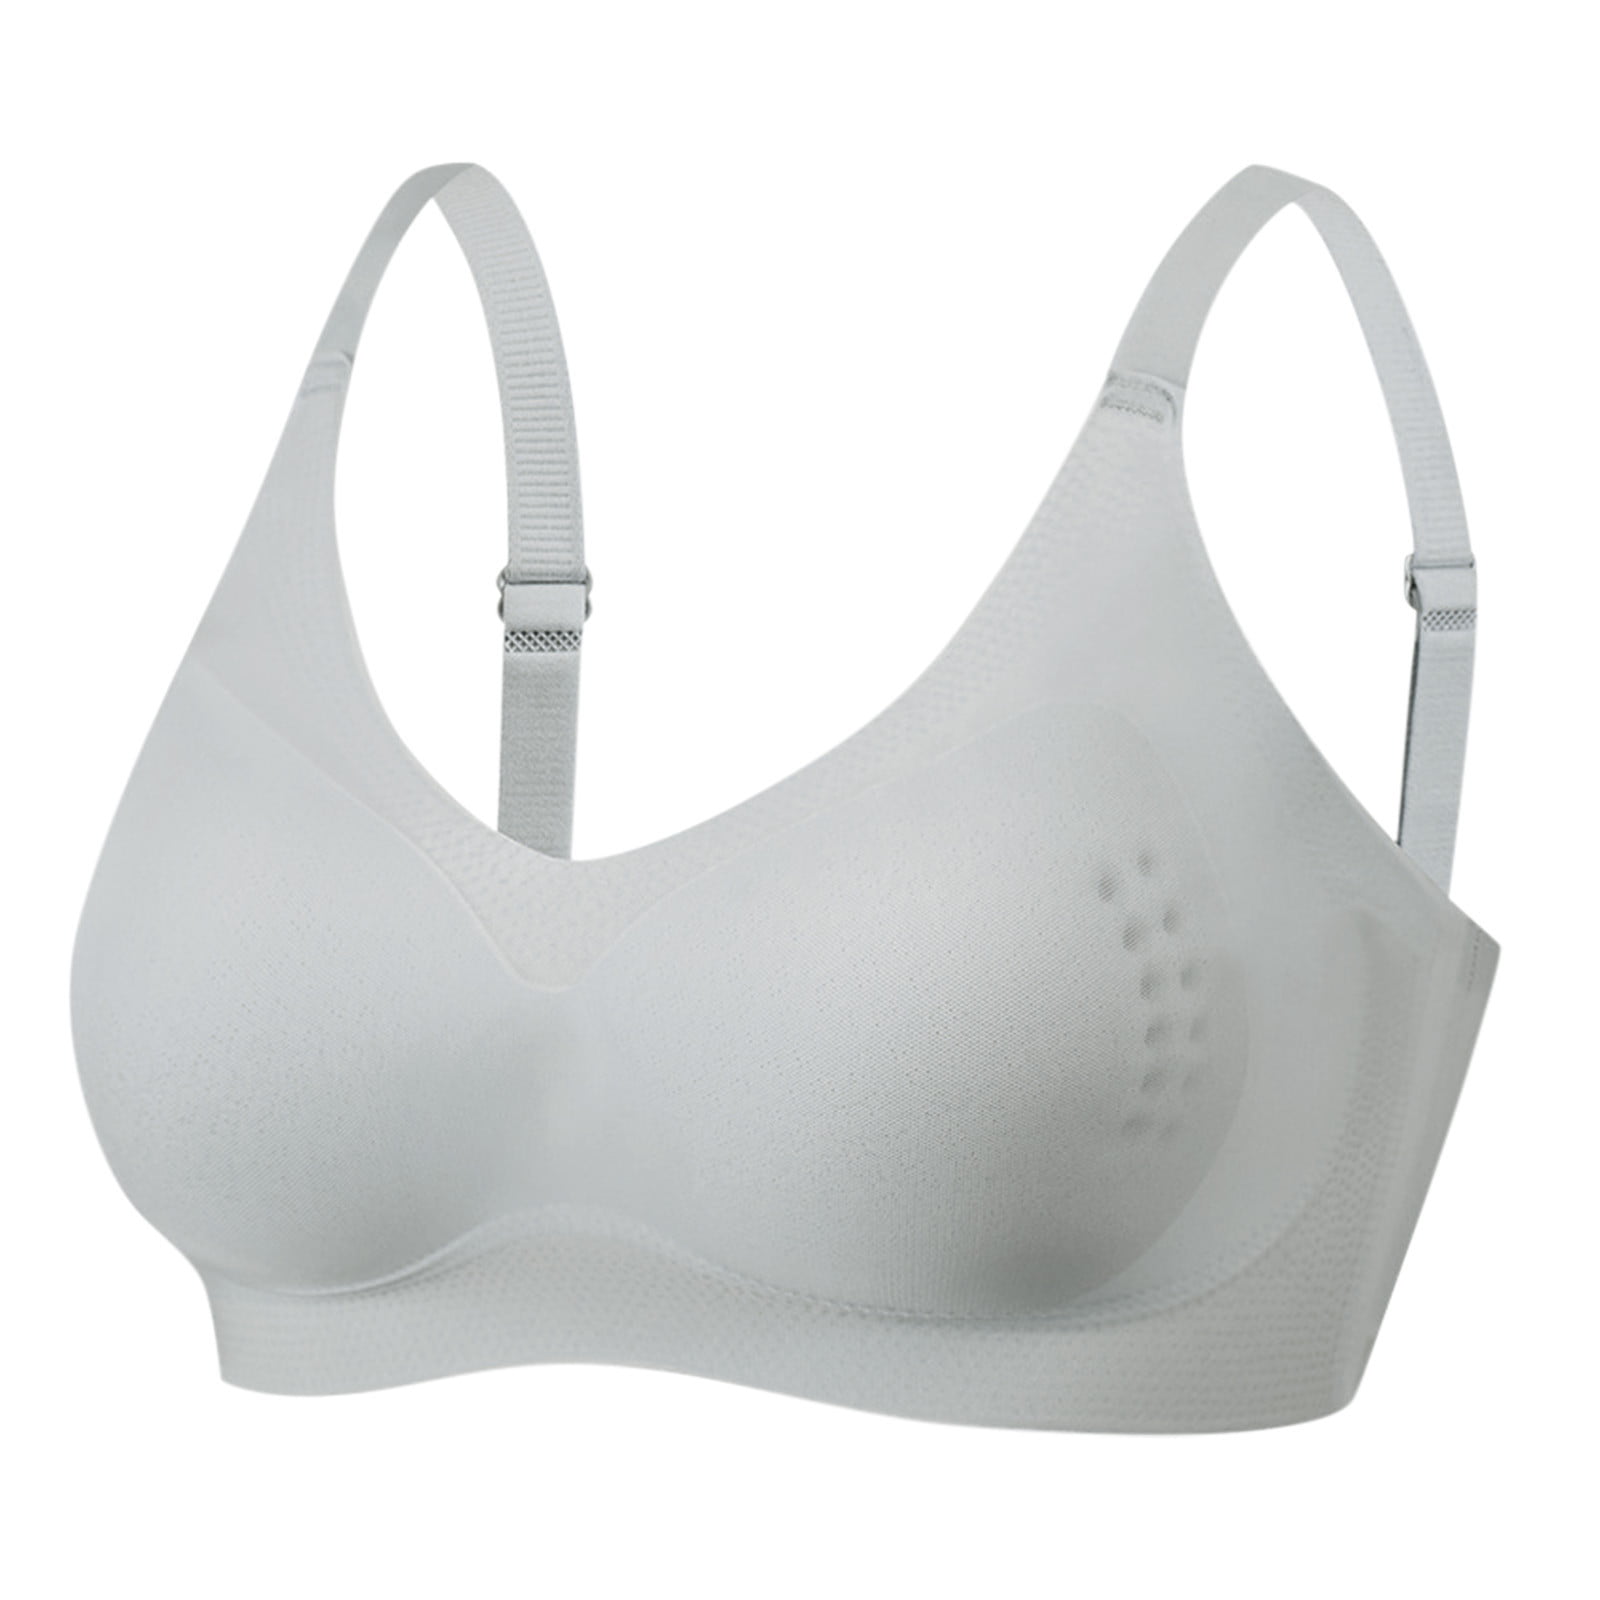 Pgeraug bras for women Plus Size Underwire Trackless Ice Silk Sports Bra  Underwear underwear women Gray XL